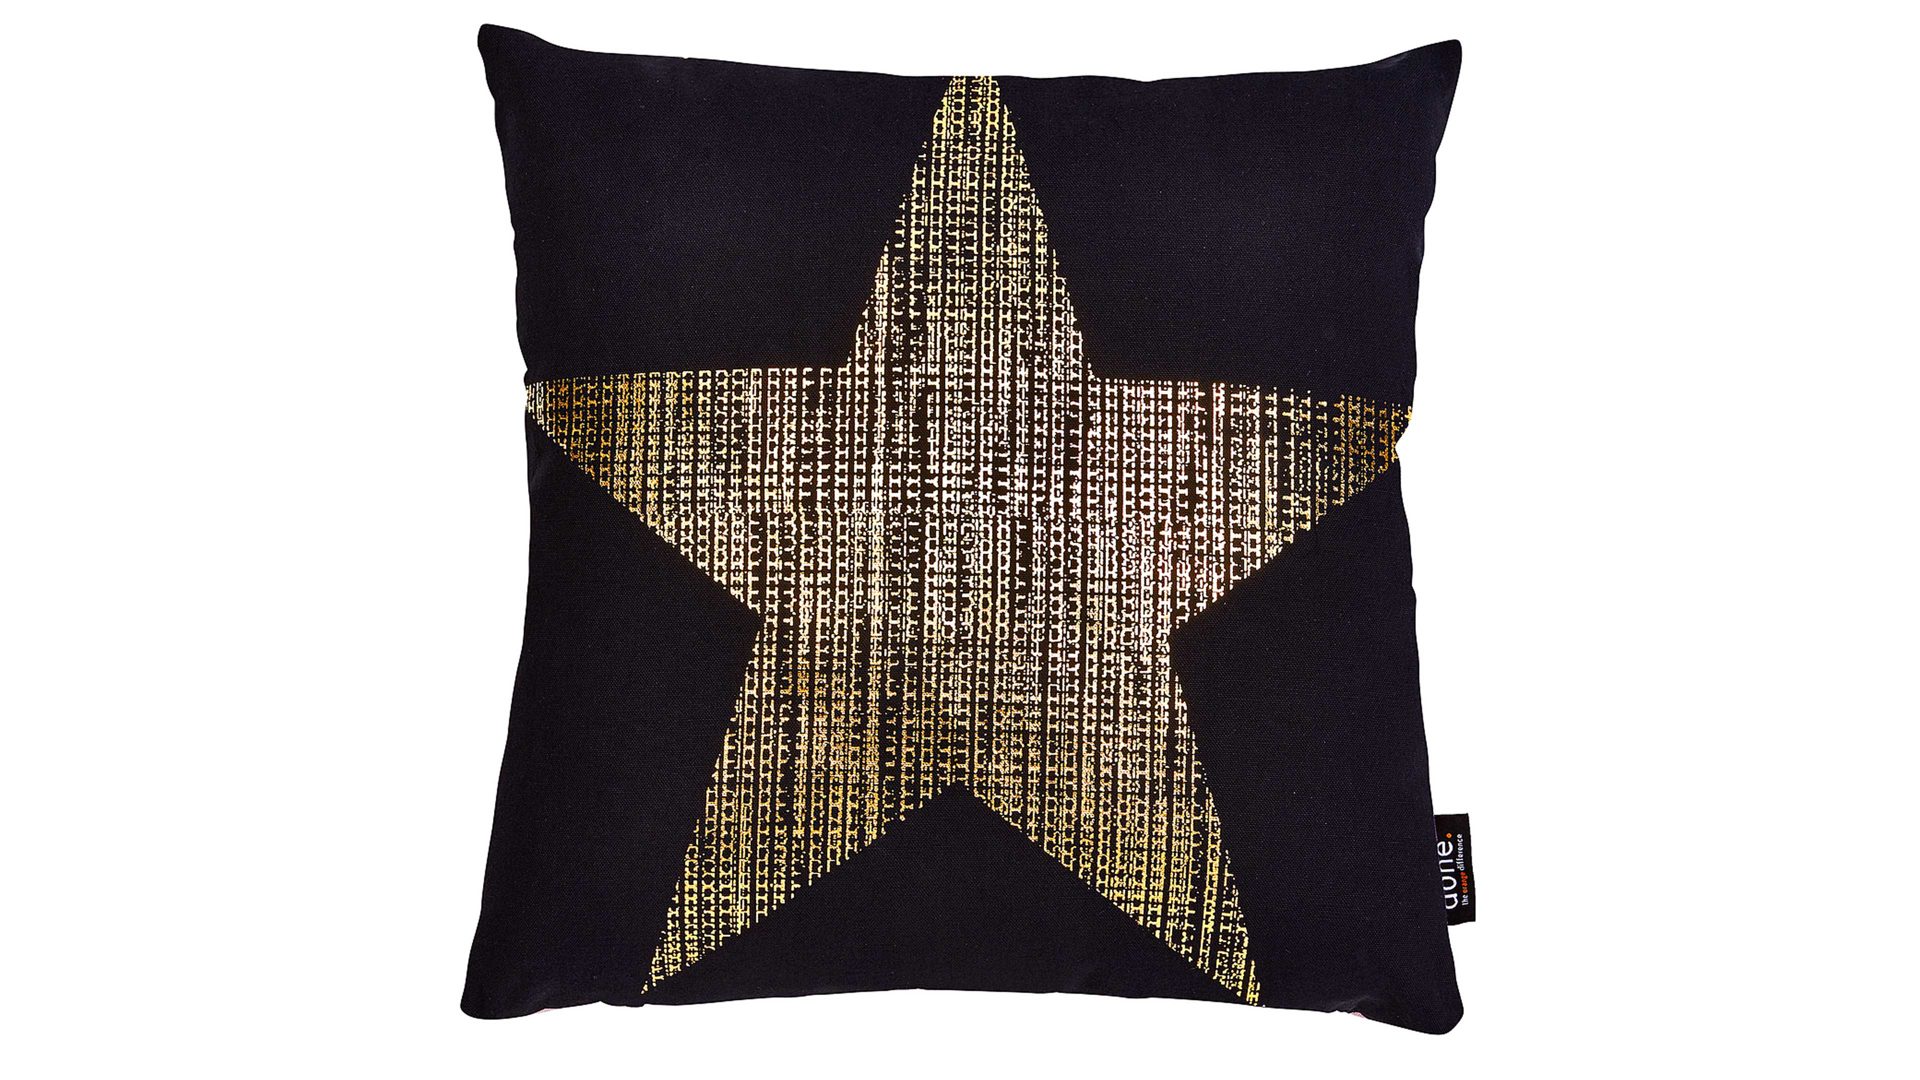 Einzelkissen Done.® aus Baumwolle in Schwarz done.® Kissen Cushion Stone schwarz & Golddruck Star - ca. 45 x 45 cm